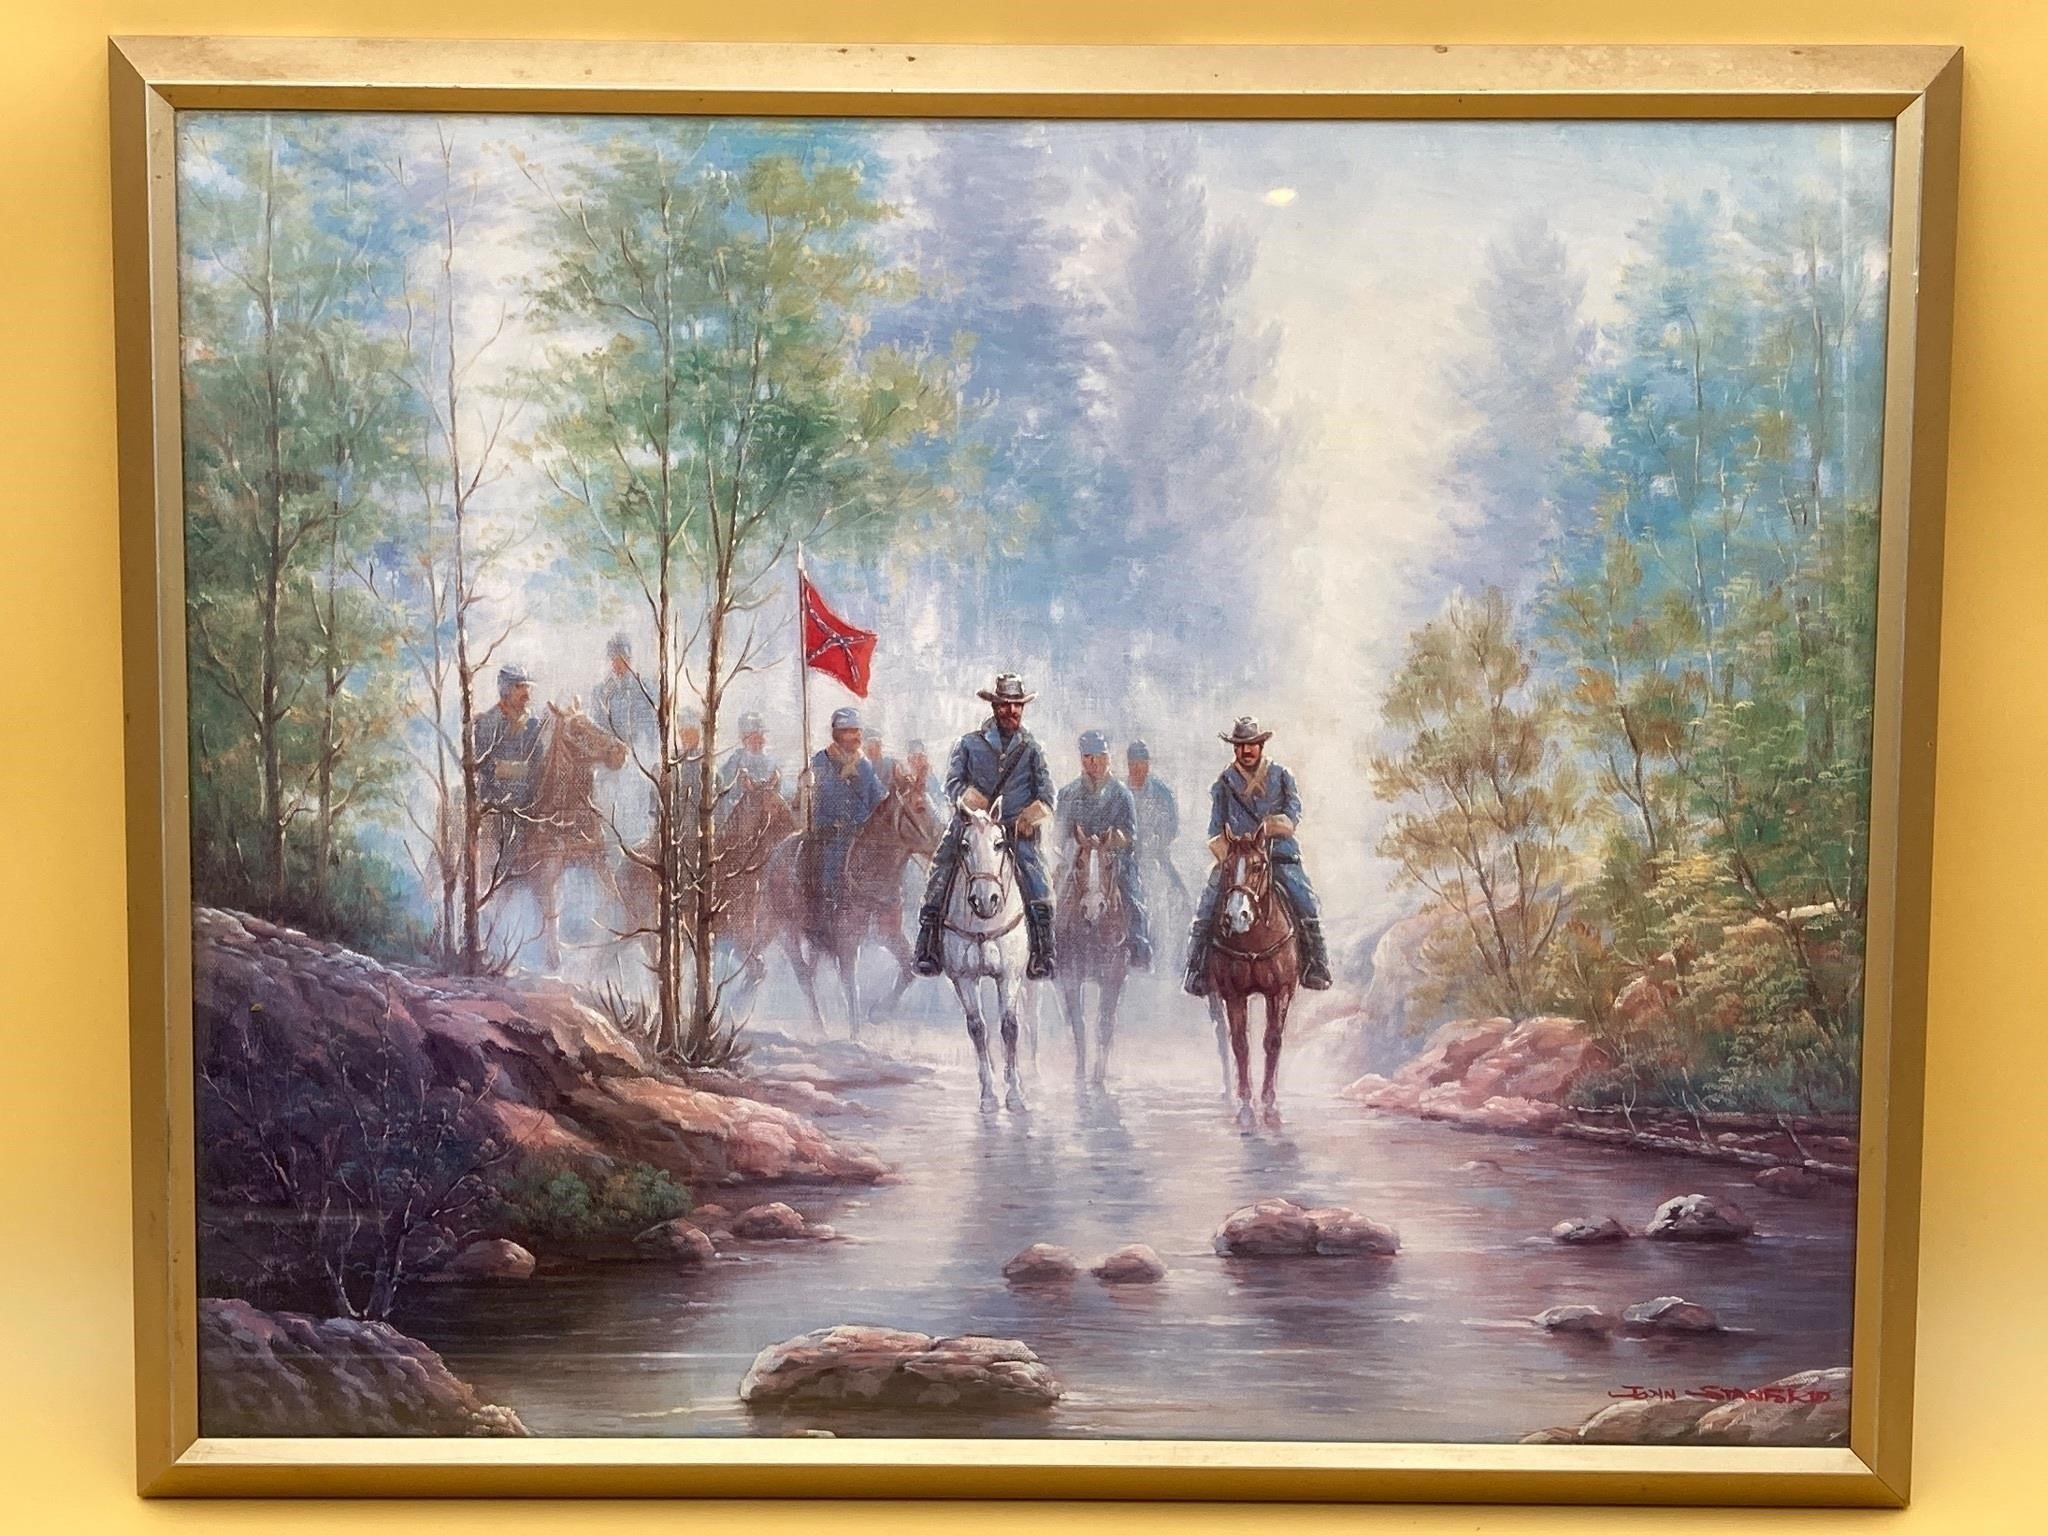 Framed 16x20” John Stanford Civil War Painting